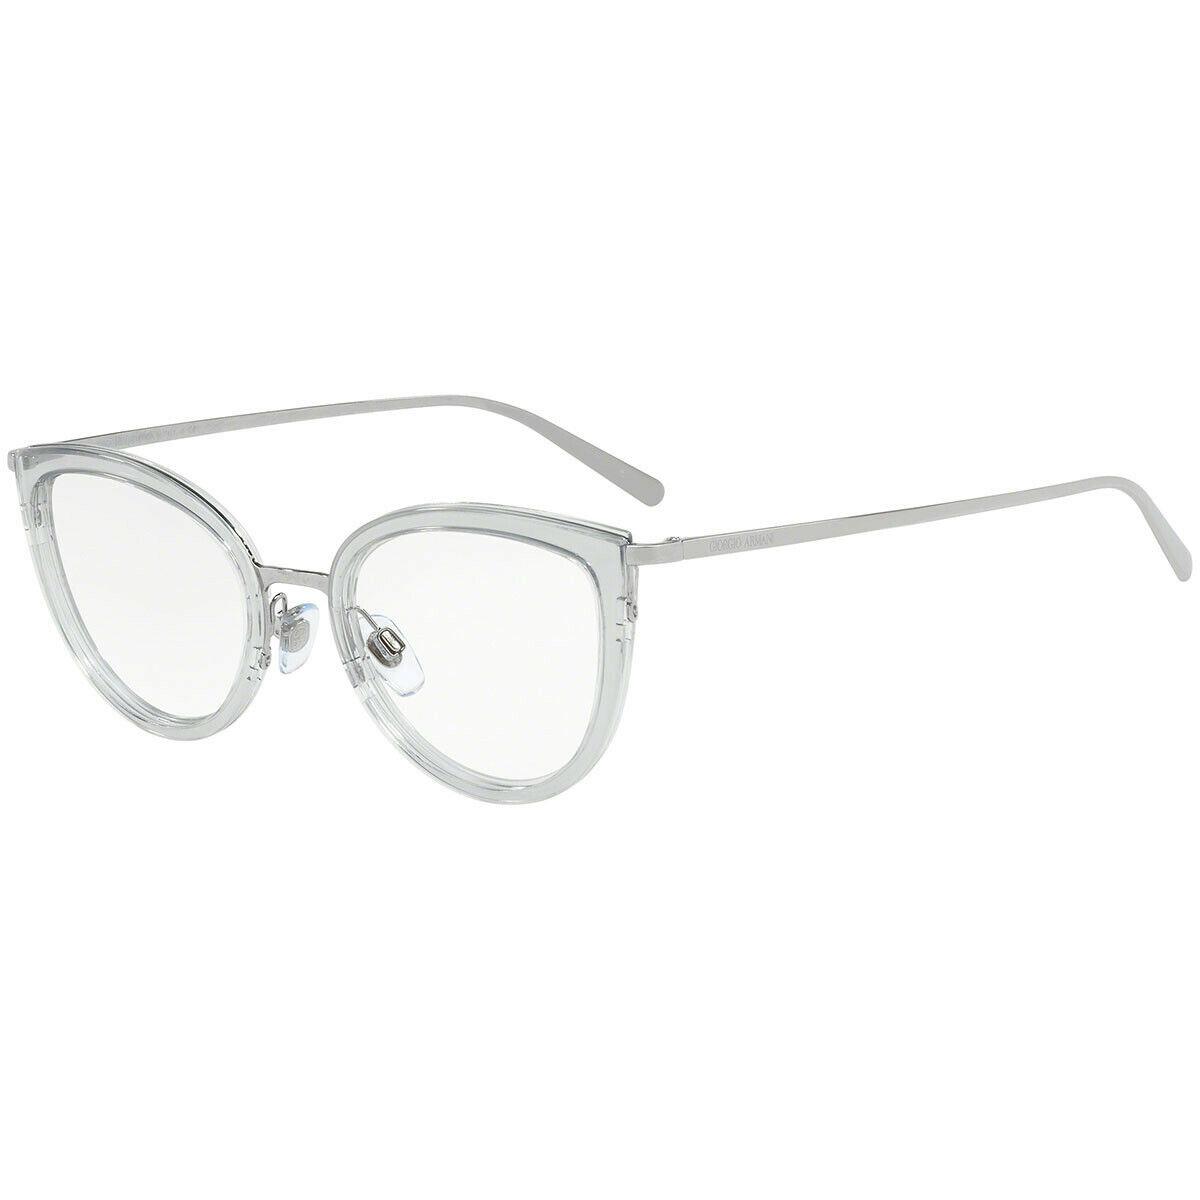 Giorgio Armani AR5068 3010 Silver Smoke Grey Cat Eye Eyeglasses 52-20-145 5068